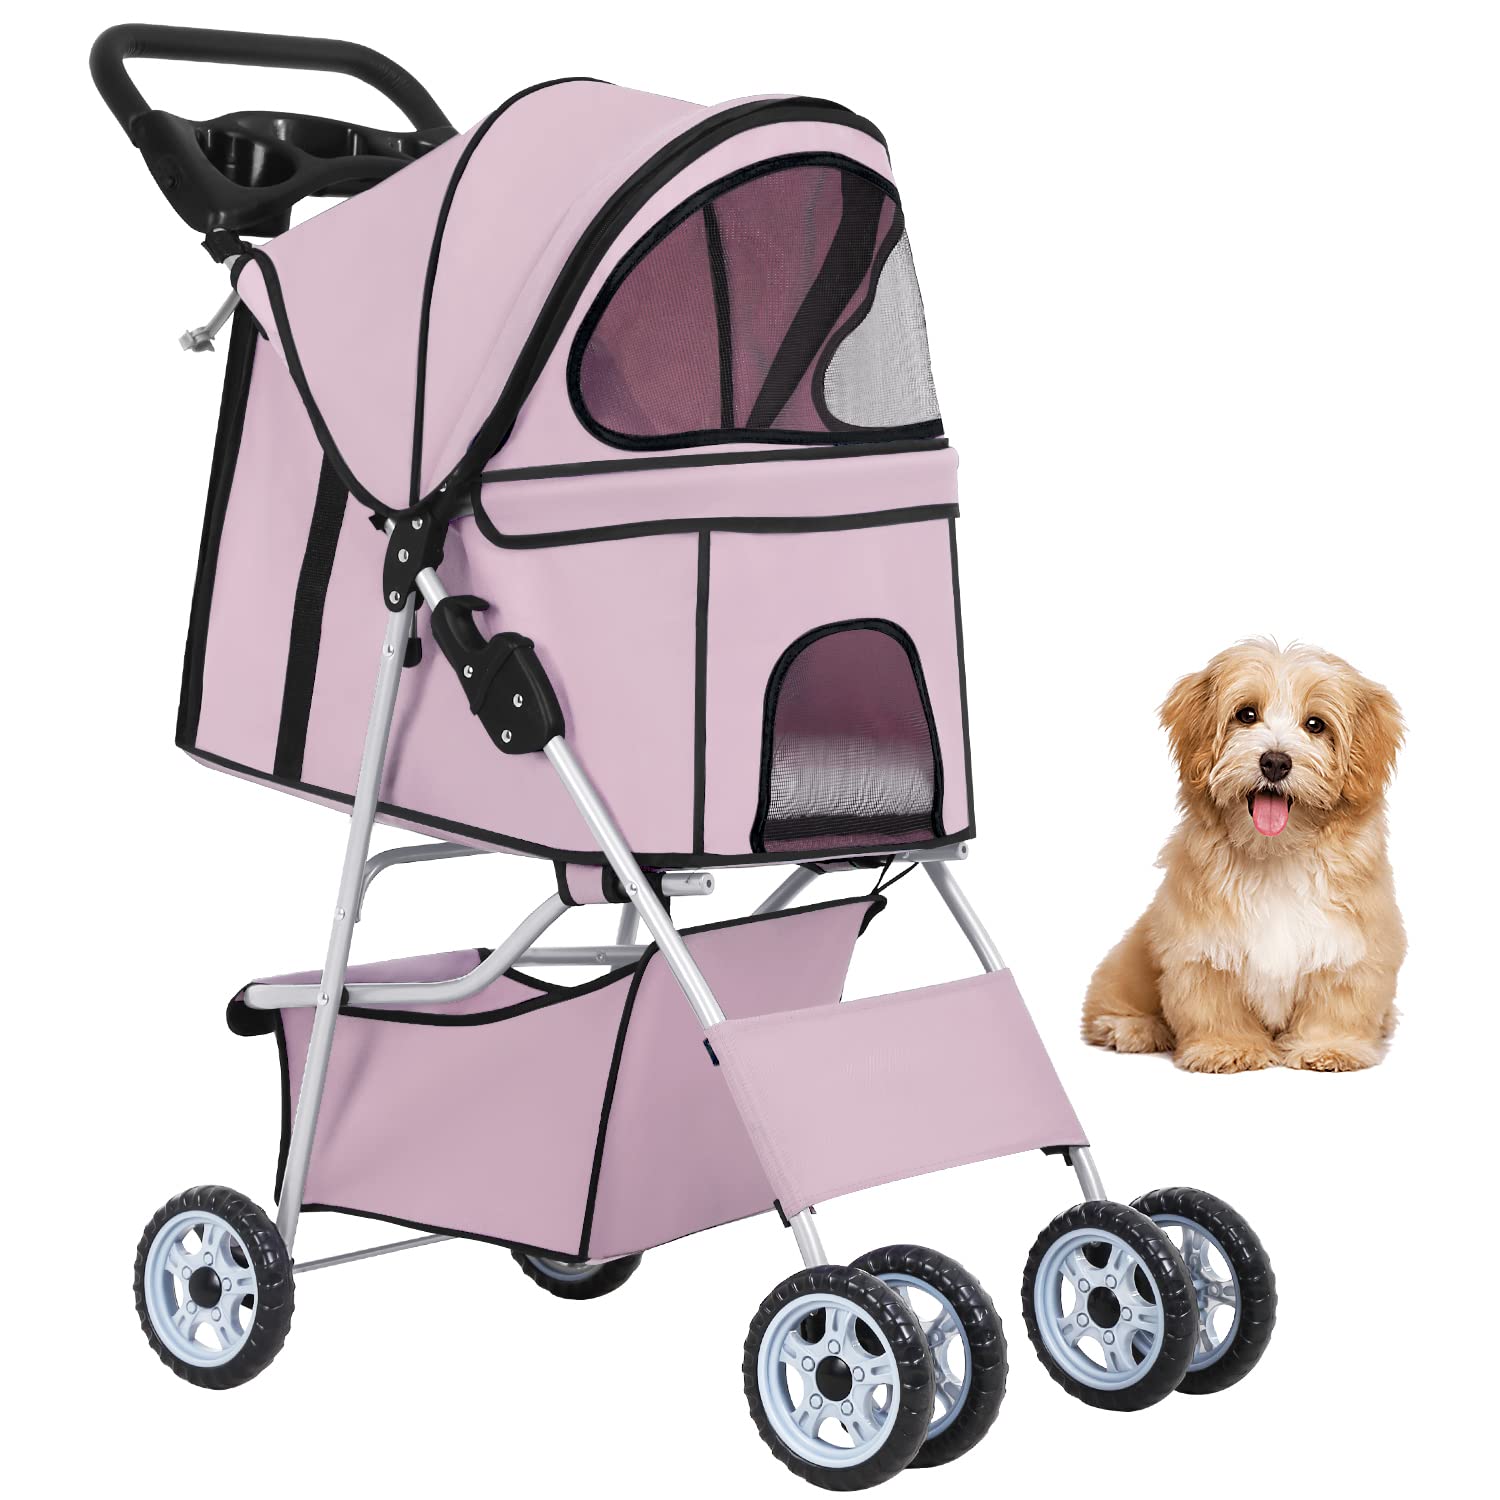 Bestpet Pet Stroller Cat Dog Cage Stroller Travel Folding Carrier,Light Pink